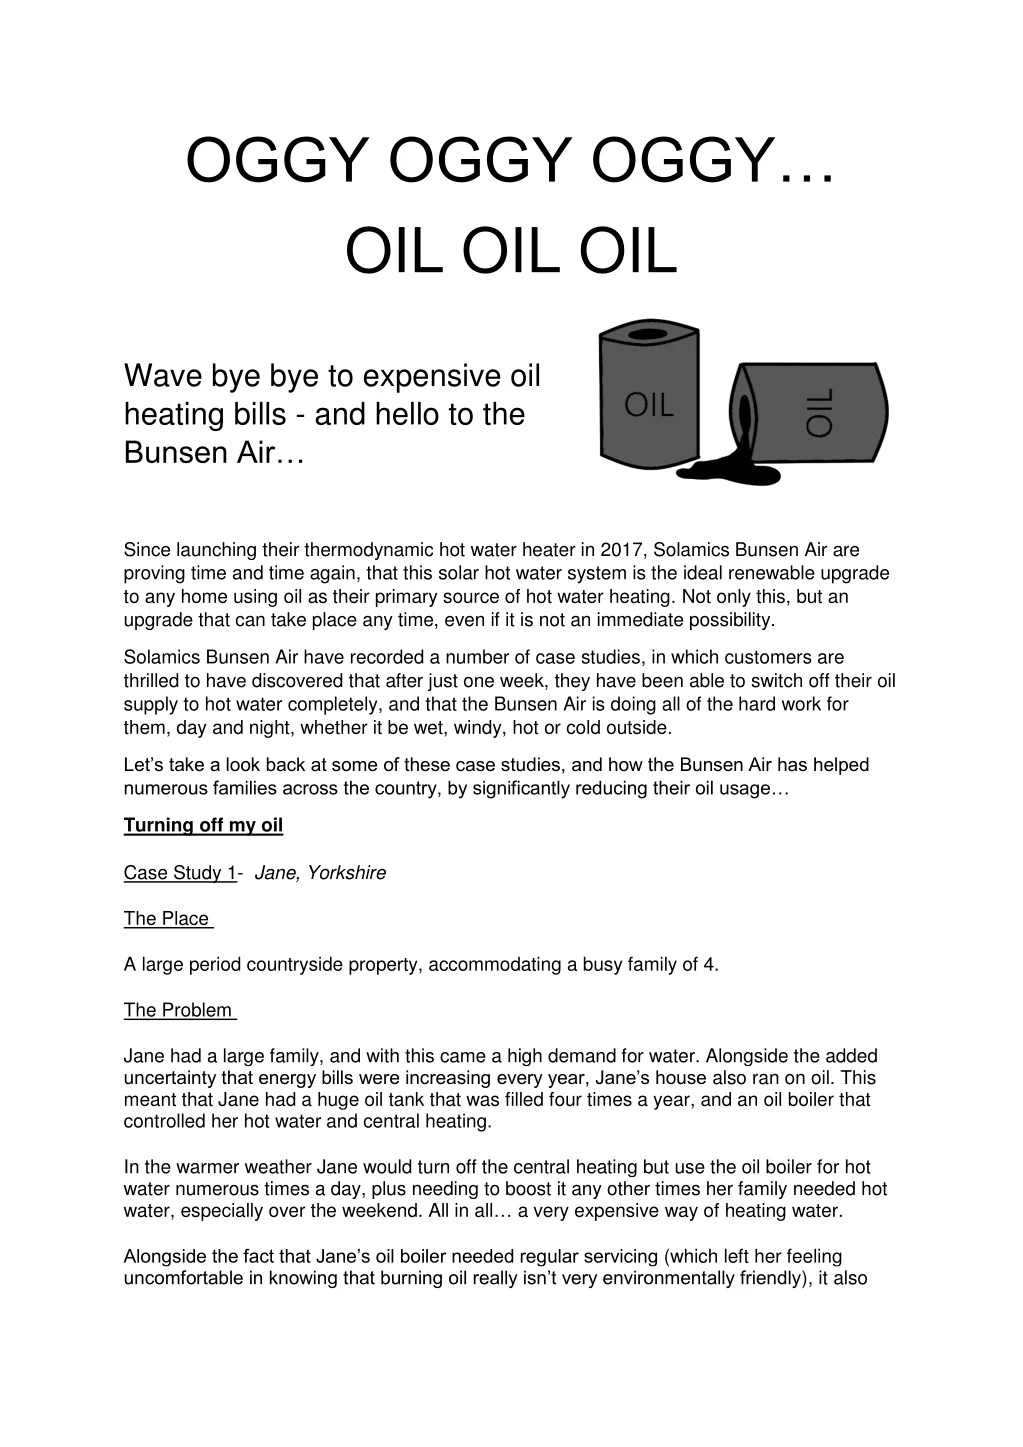 oggy oggy oggy oil oil oil